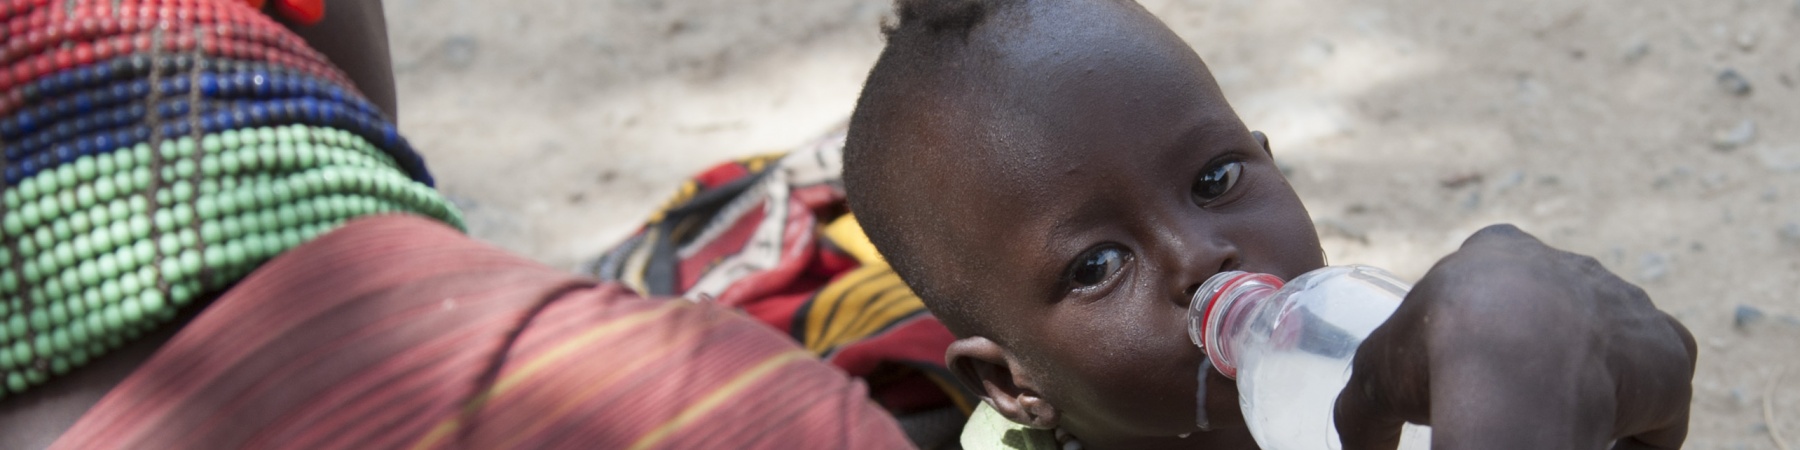 Bambini malnutriti in Kenya a causa della siccità